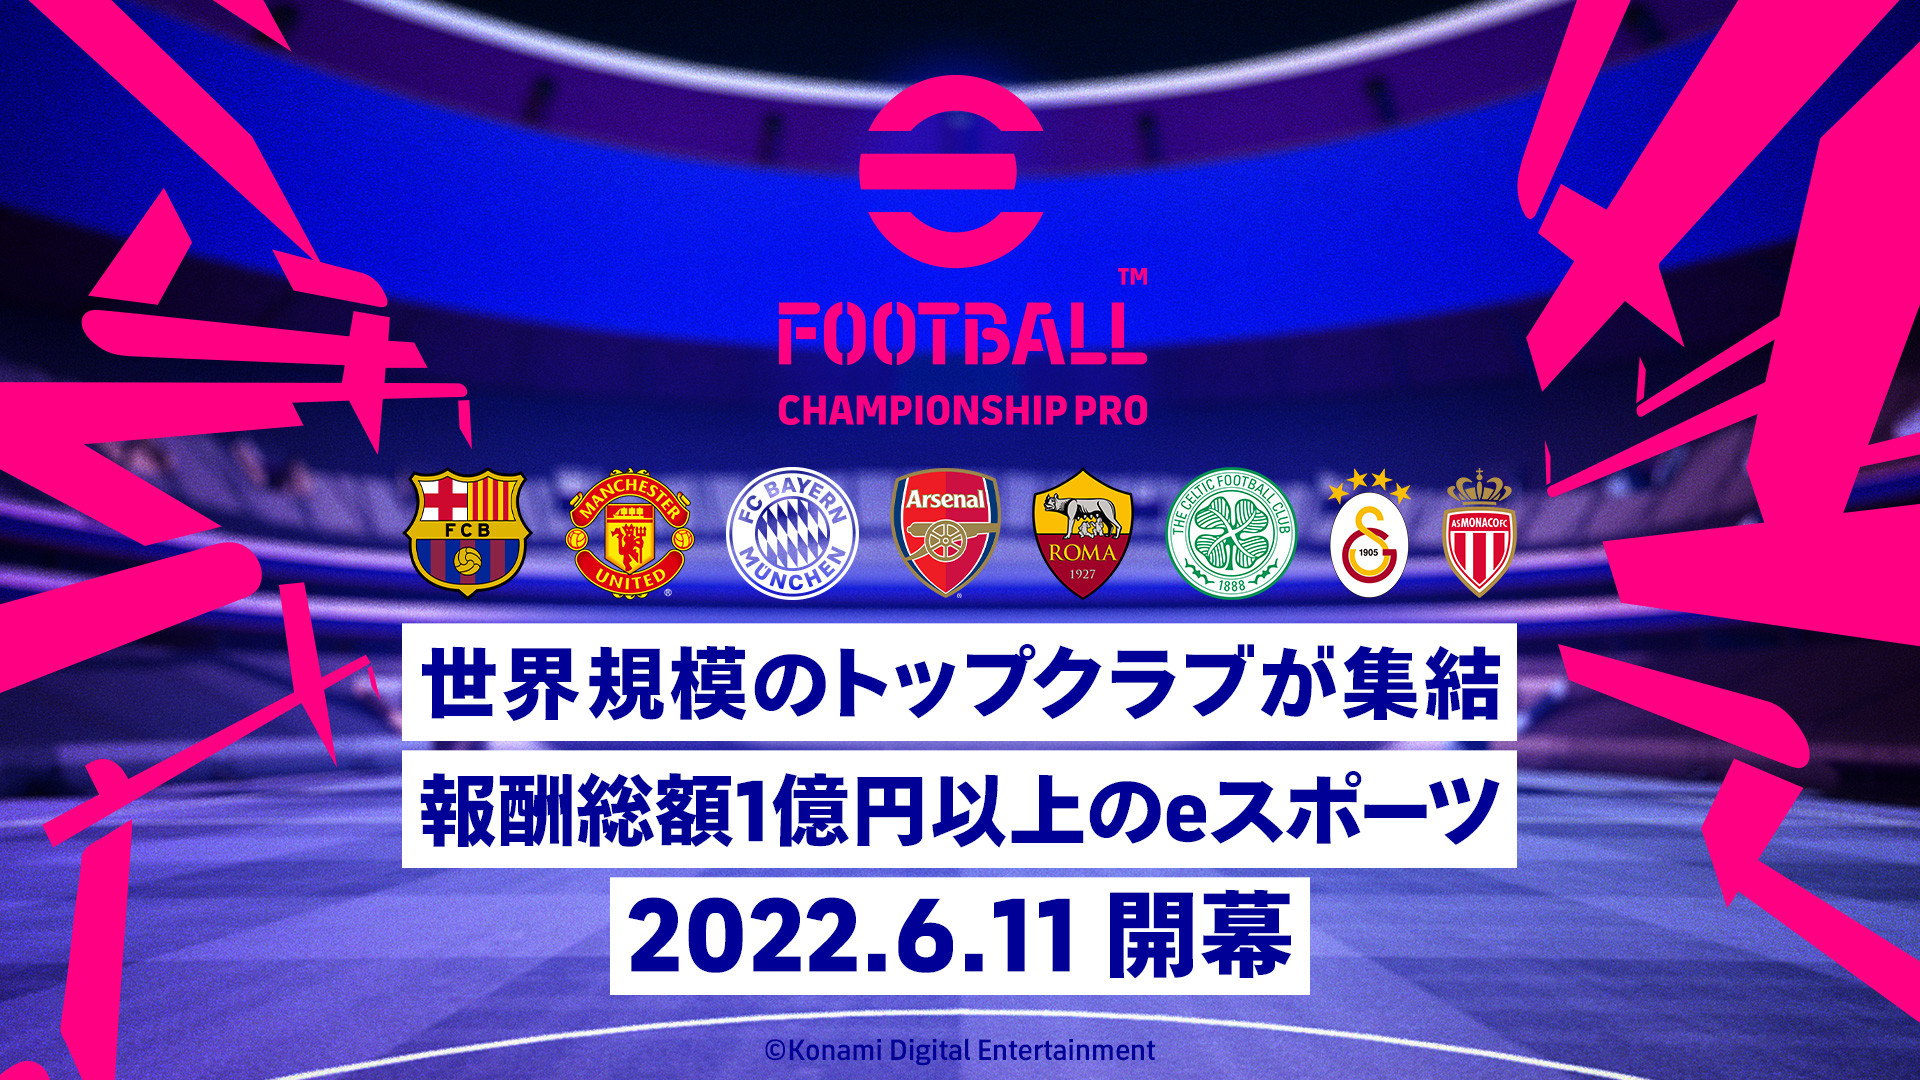 【大会情報】eFootball Championship Pro 2022 決勝トーナメント【2022年6月25日、26日】